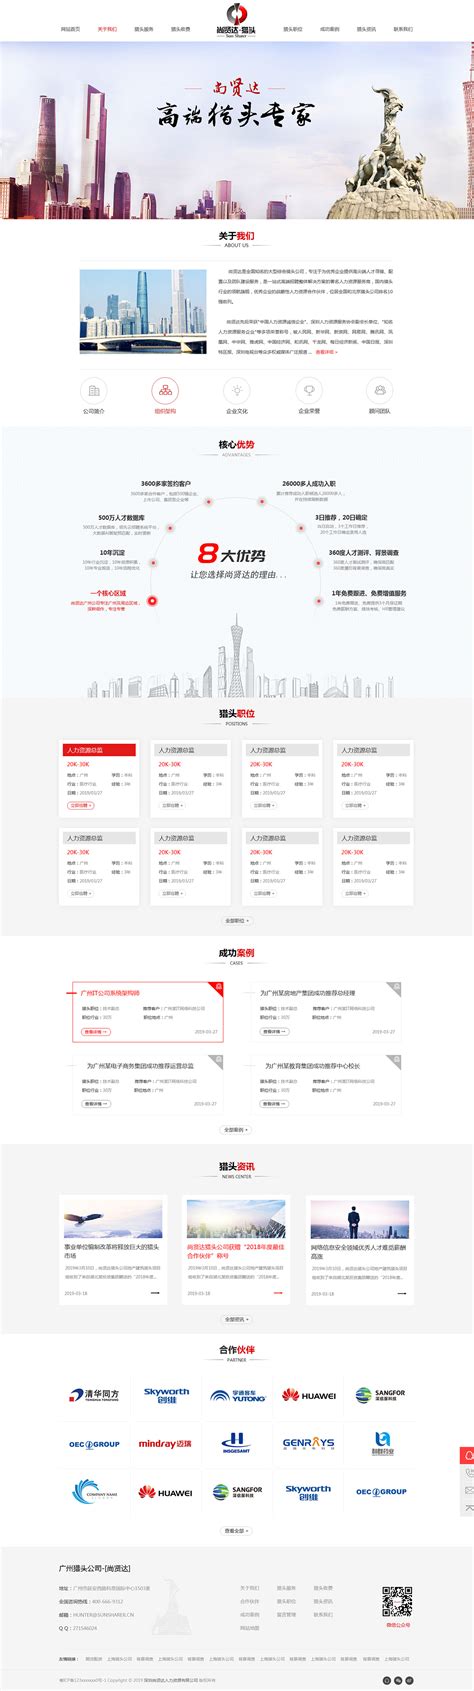 尚贤达猎头广州站网站设计案例 - 方维网络